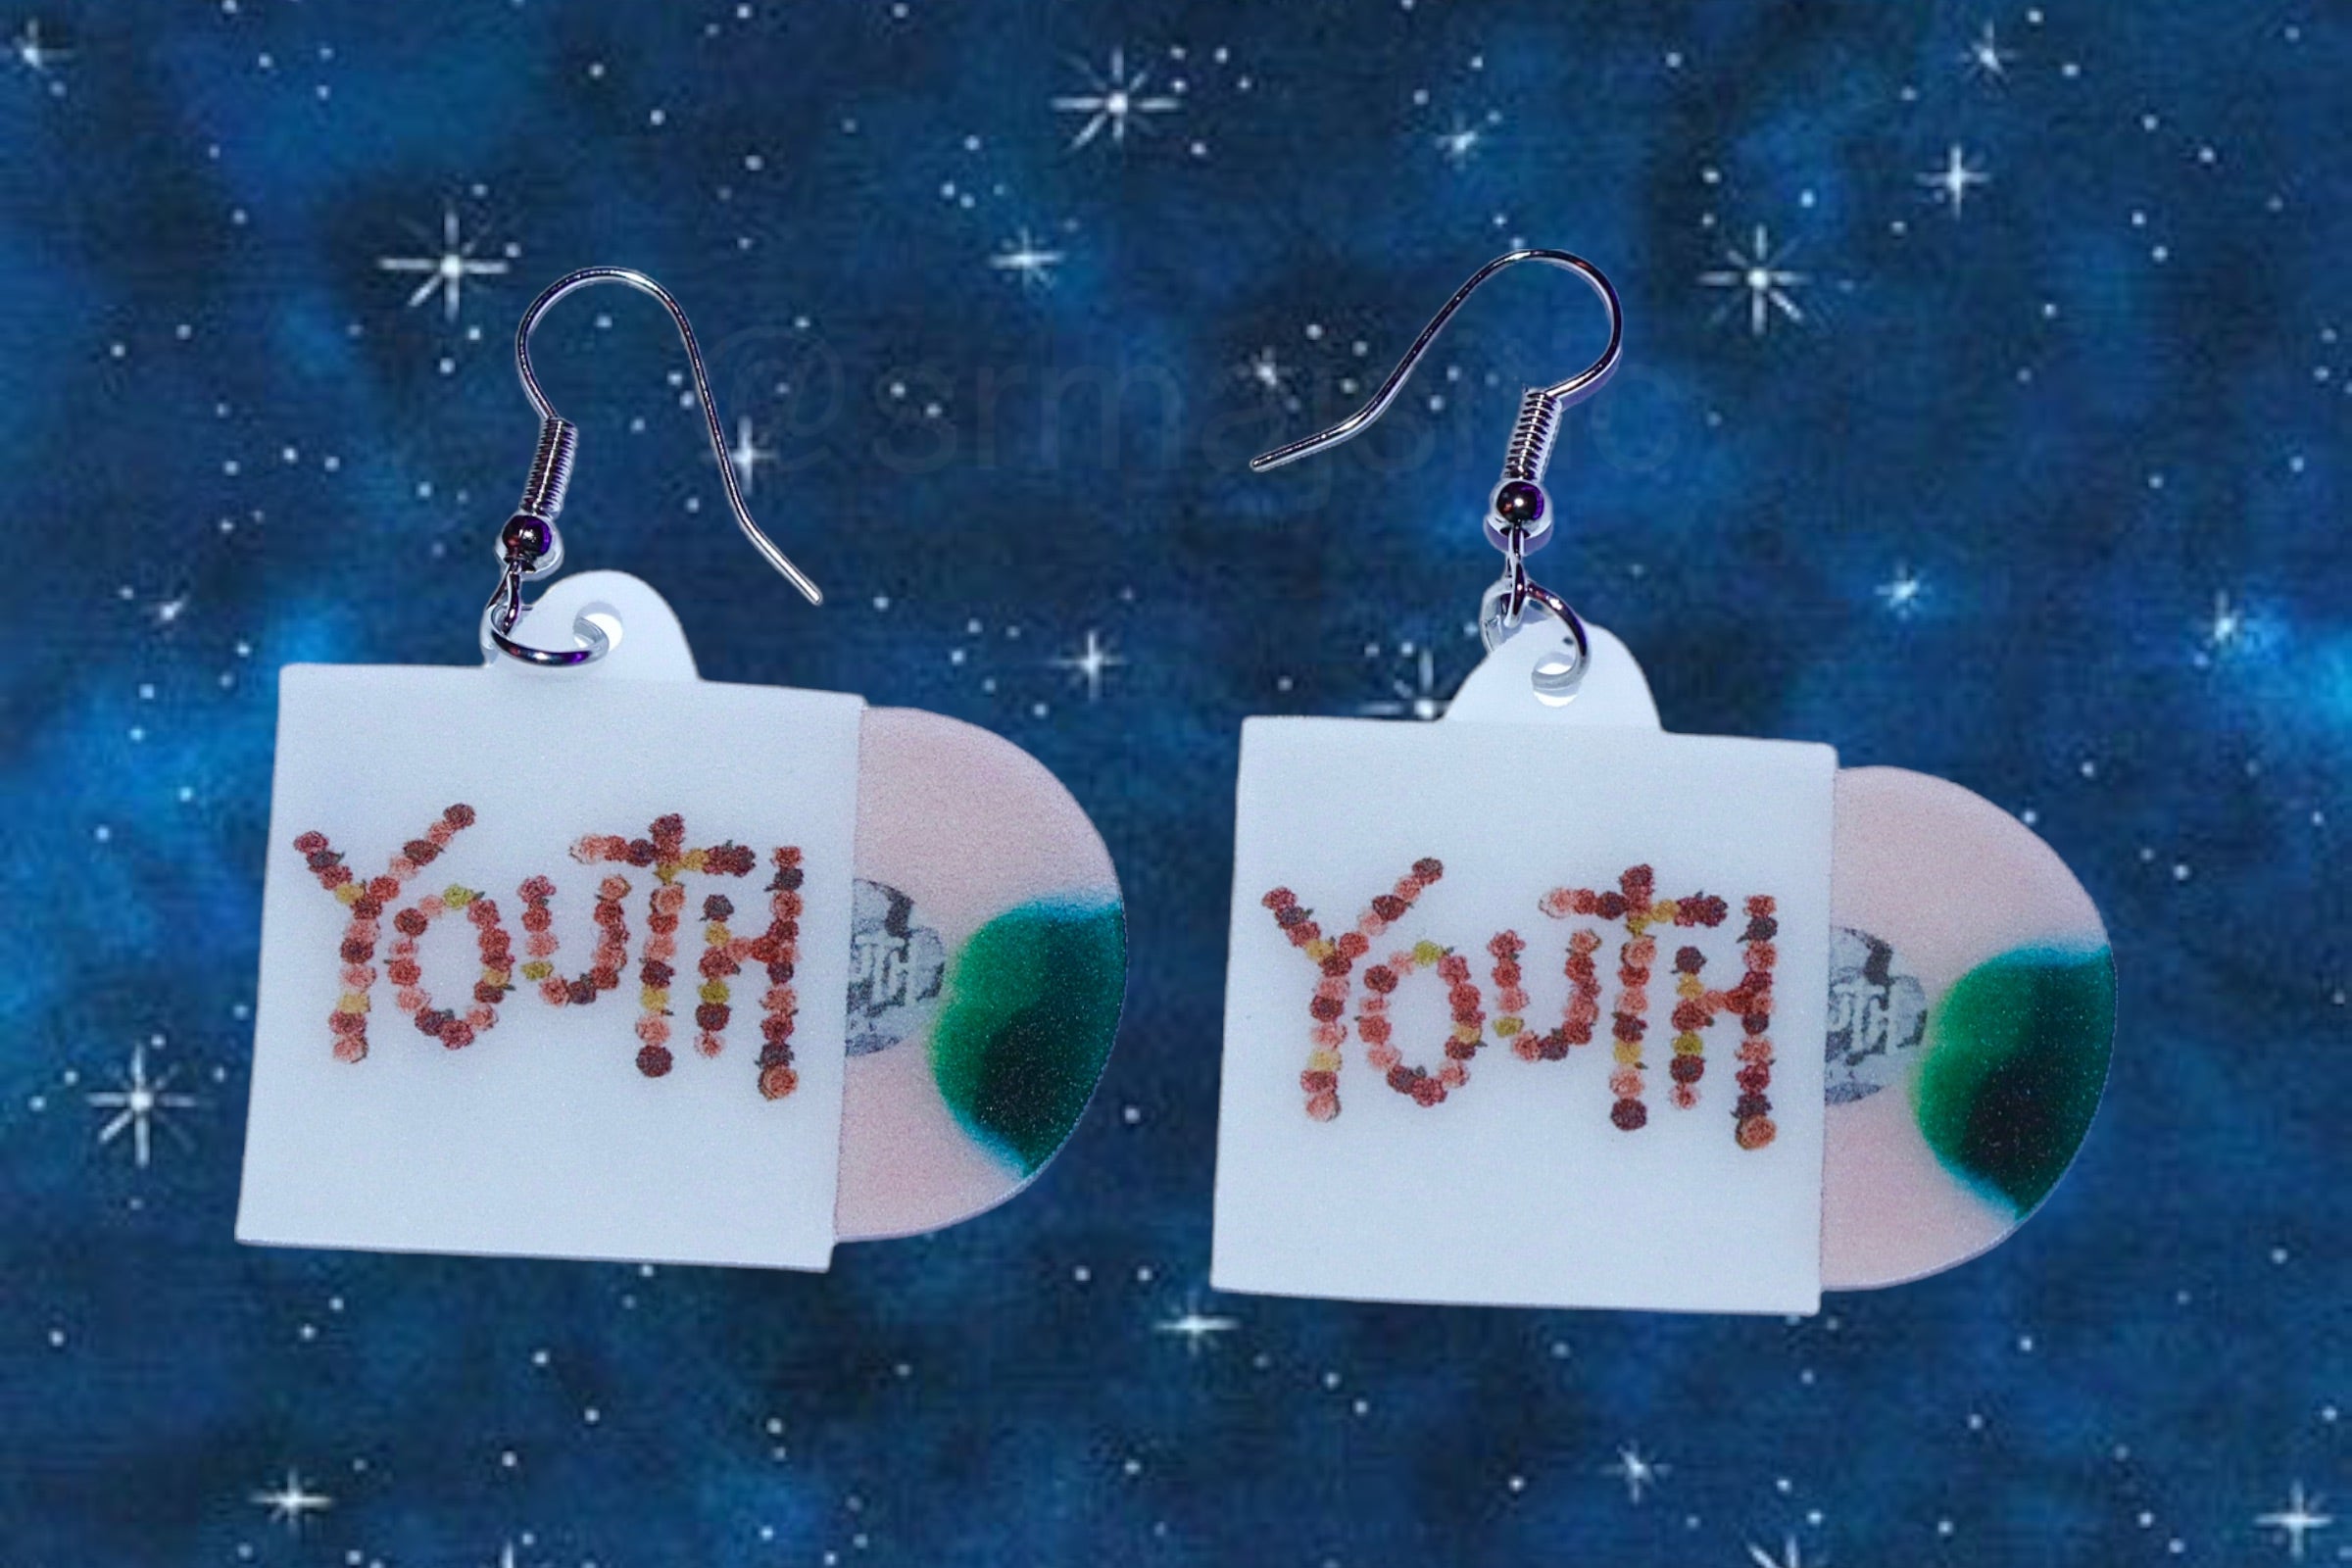 Citizen Youth Vinyl Handmade Earrings!